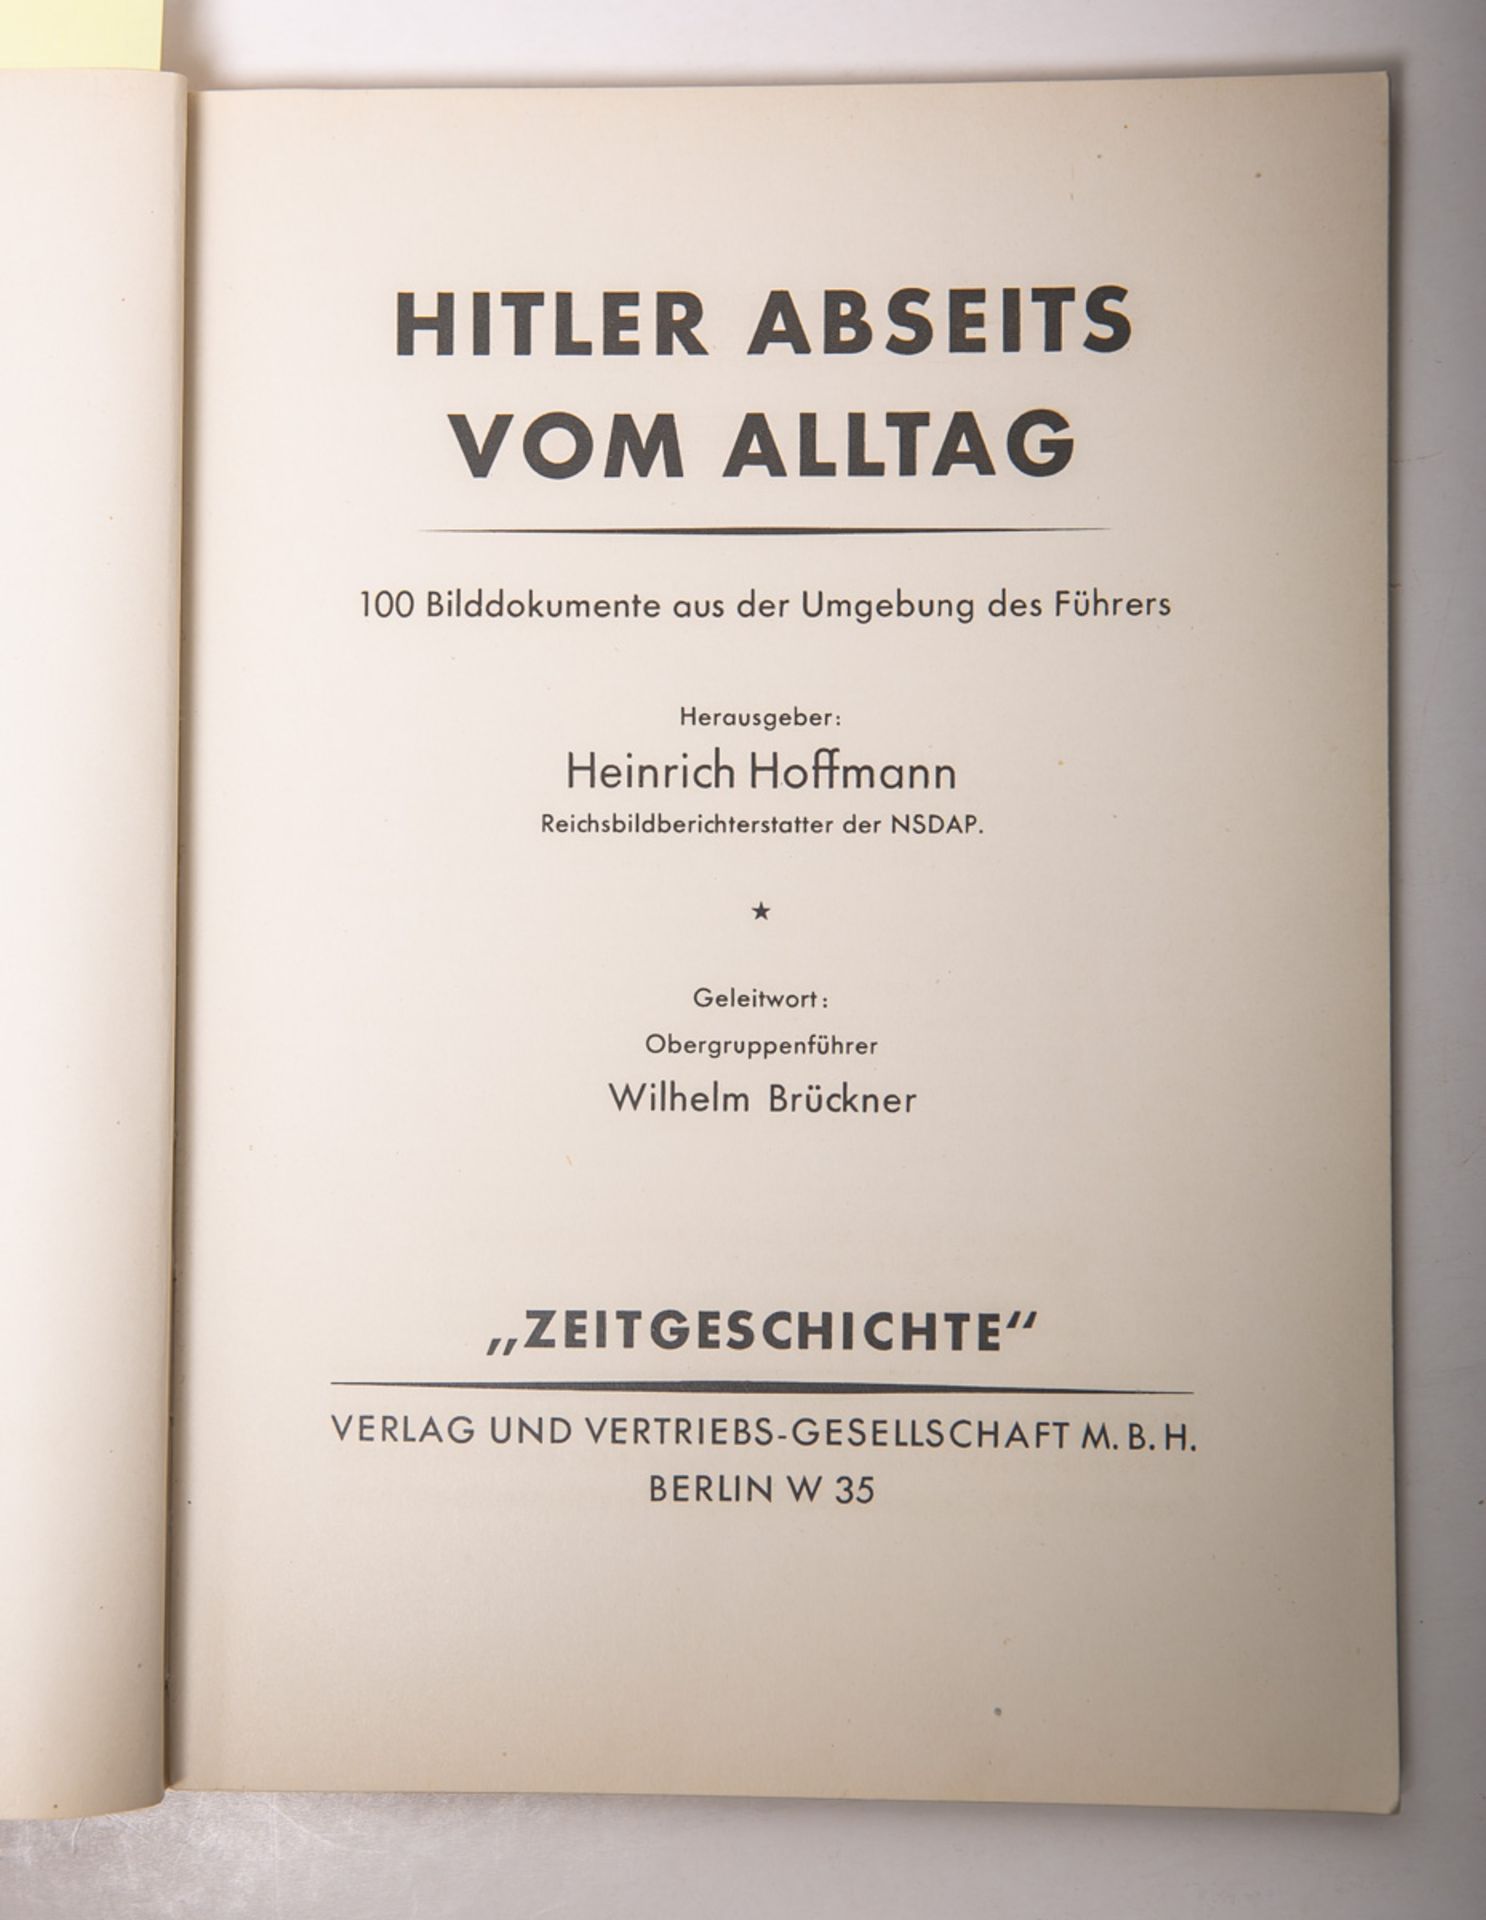 Hoffmann, Heinrich (Hrsg.), "Hitler abseits vom Alltag" - Image 2 of 2